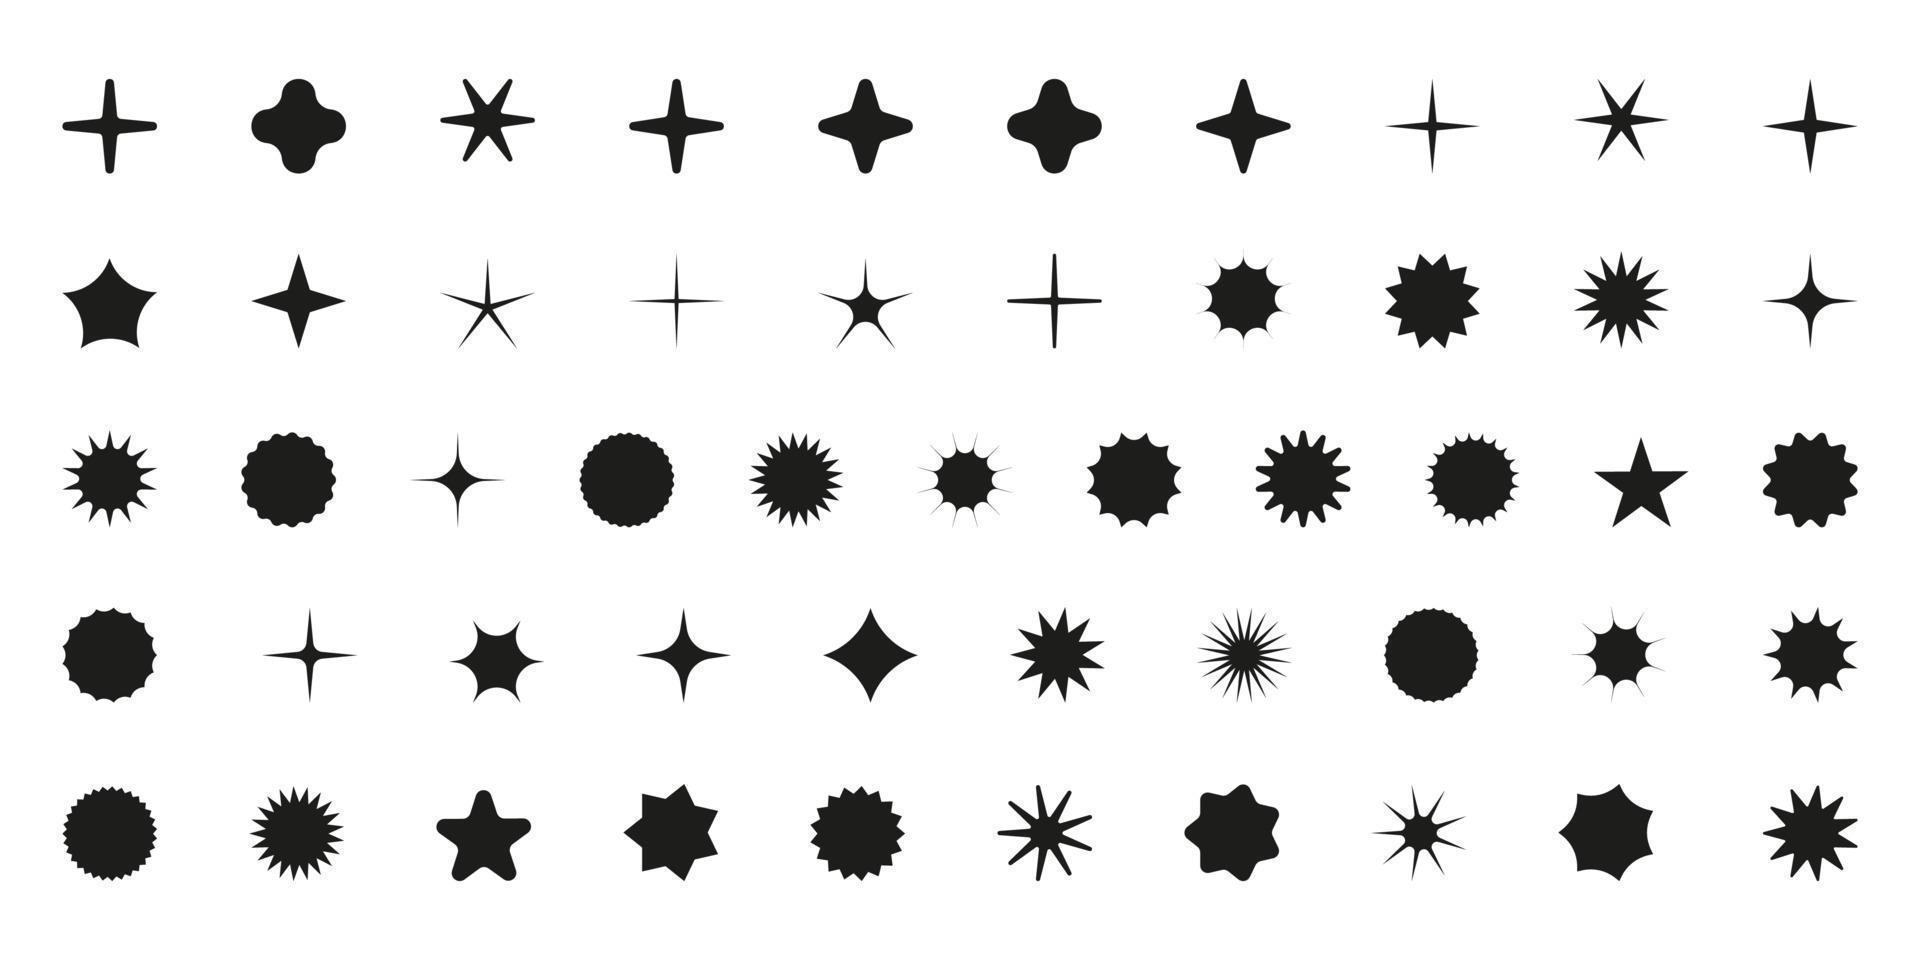 simples minimalista Preto elementos, abstrato brutalista geométrico formas. básico Formato ano 2000 figura estrela, brilhar, losango, ondulado círculo. suíço primitivo elemento definir. mínimo estético pós-moderno vetor. vetor